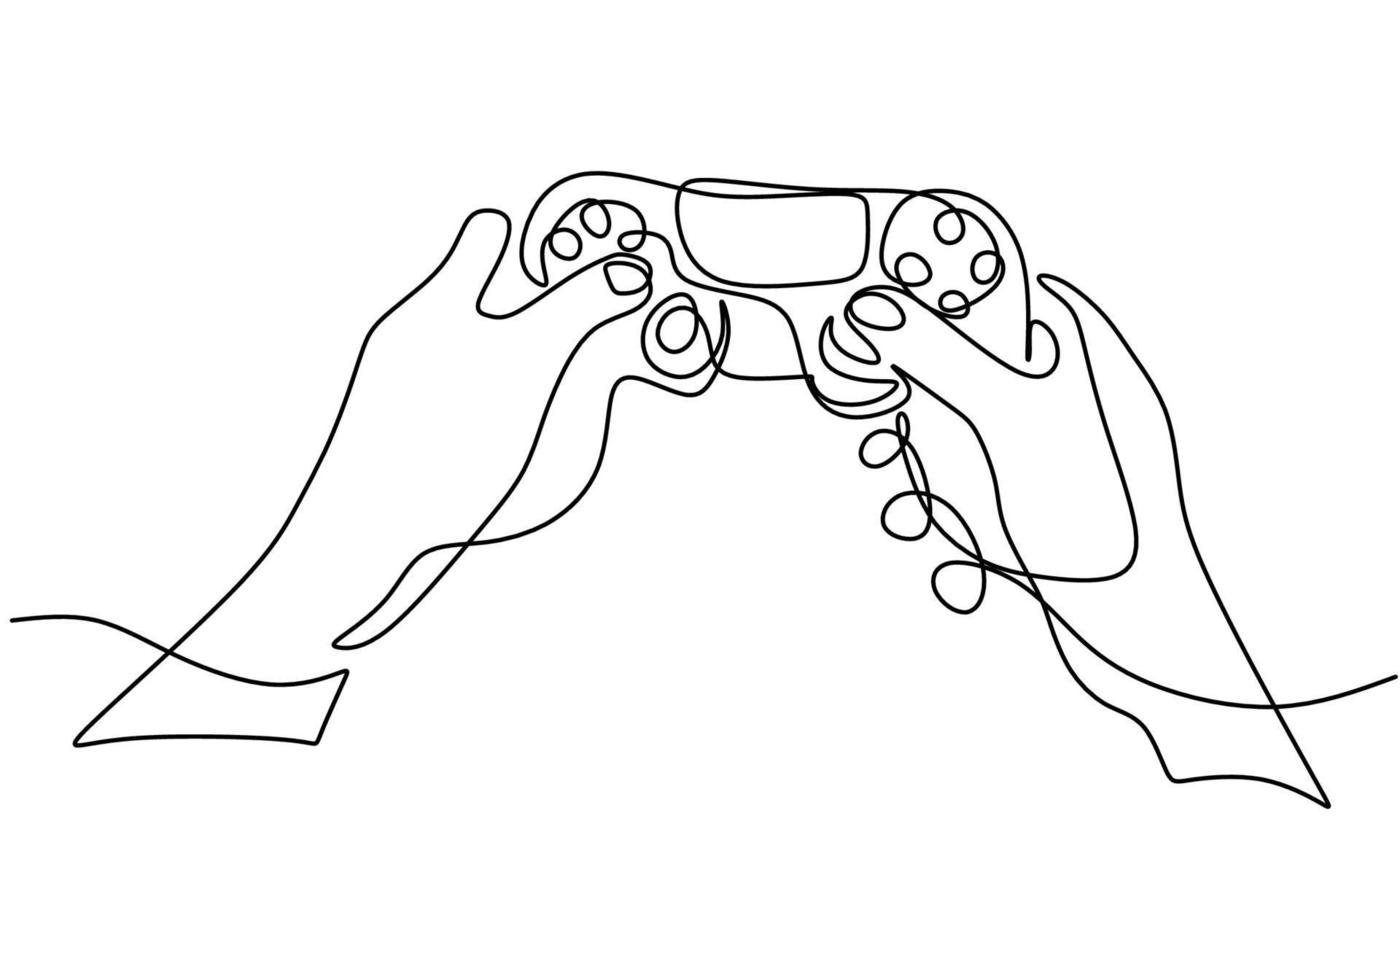 en kontinuerlig enstaka ritning av händer med joystick. vektor